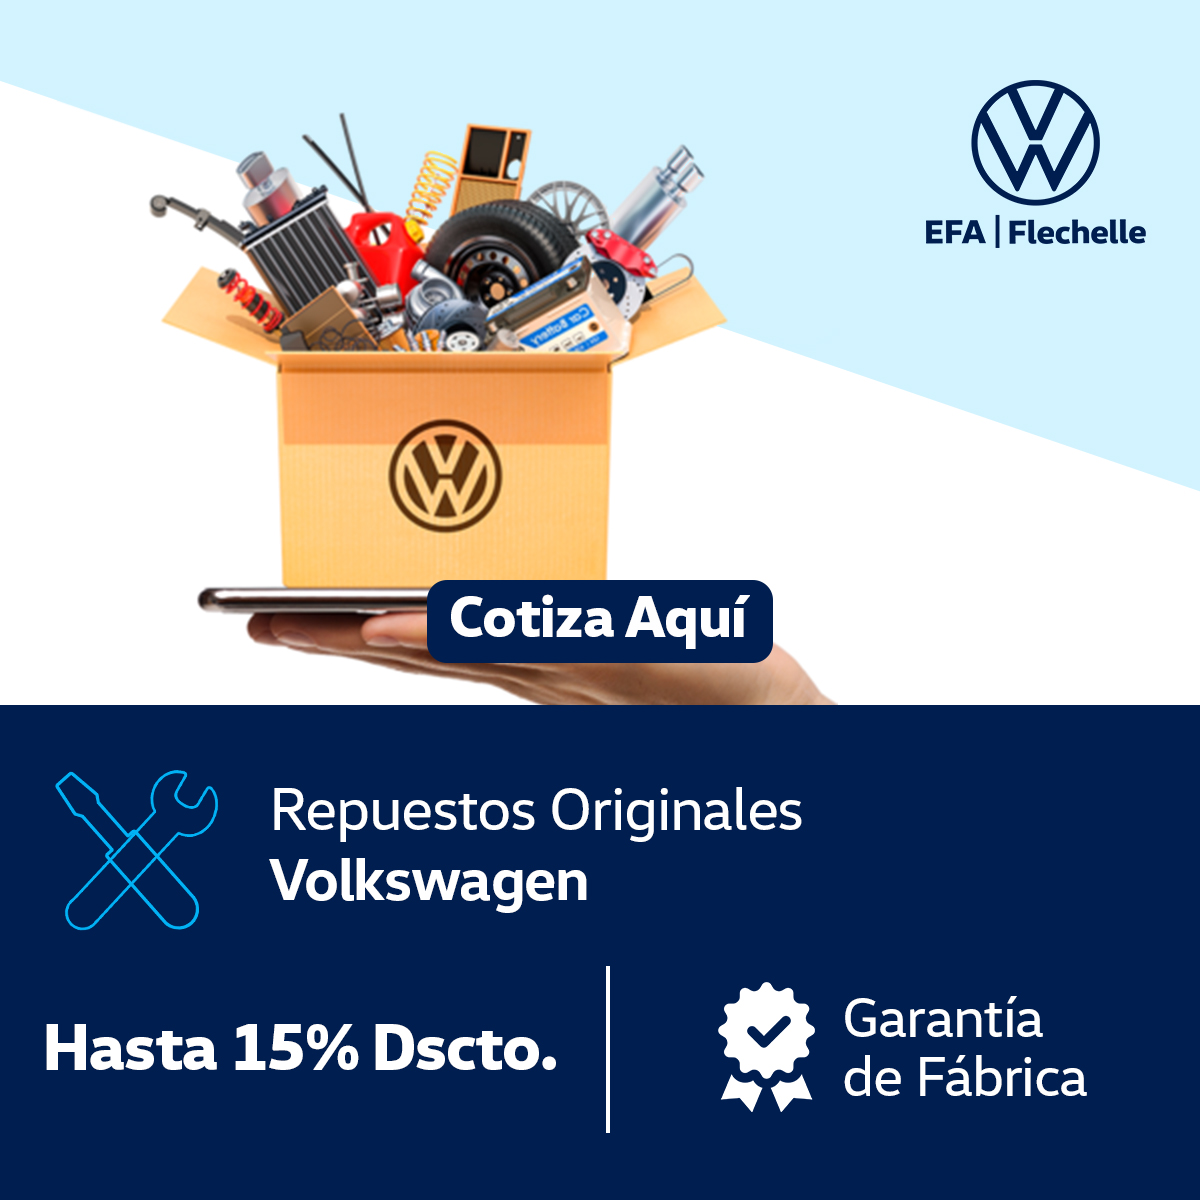 Repuestos orginales Volkswagen